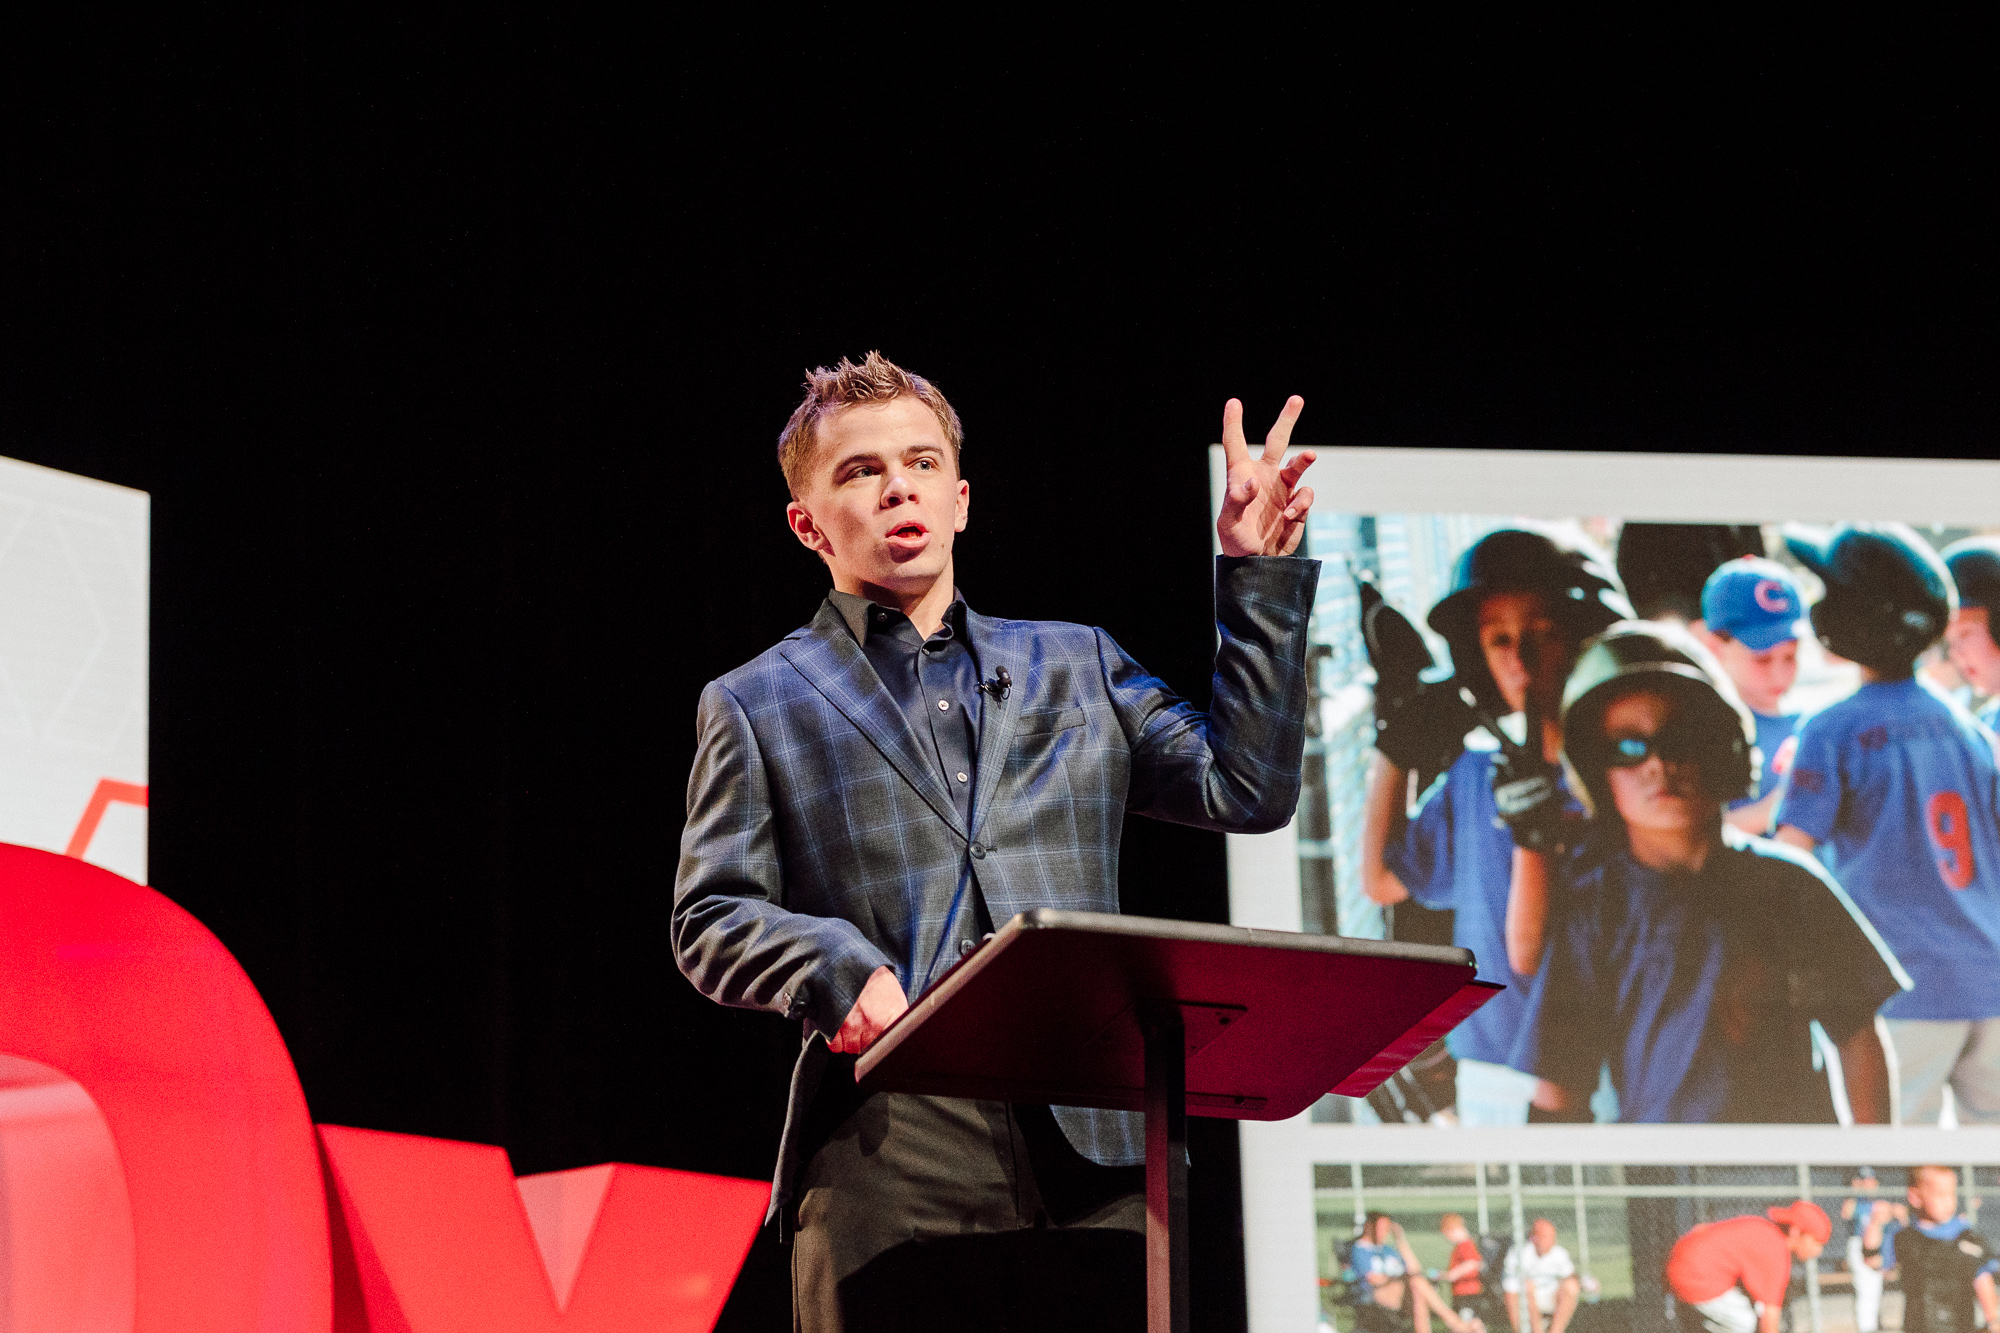 Jack Clarke speaks at TEDxDesMoines event